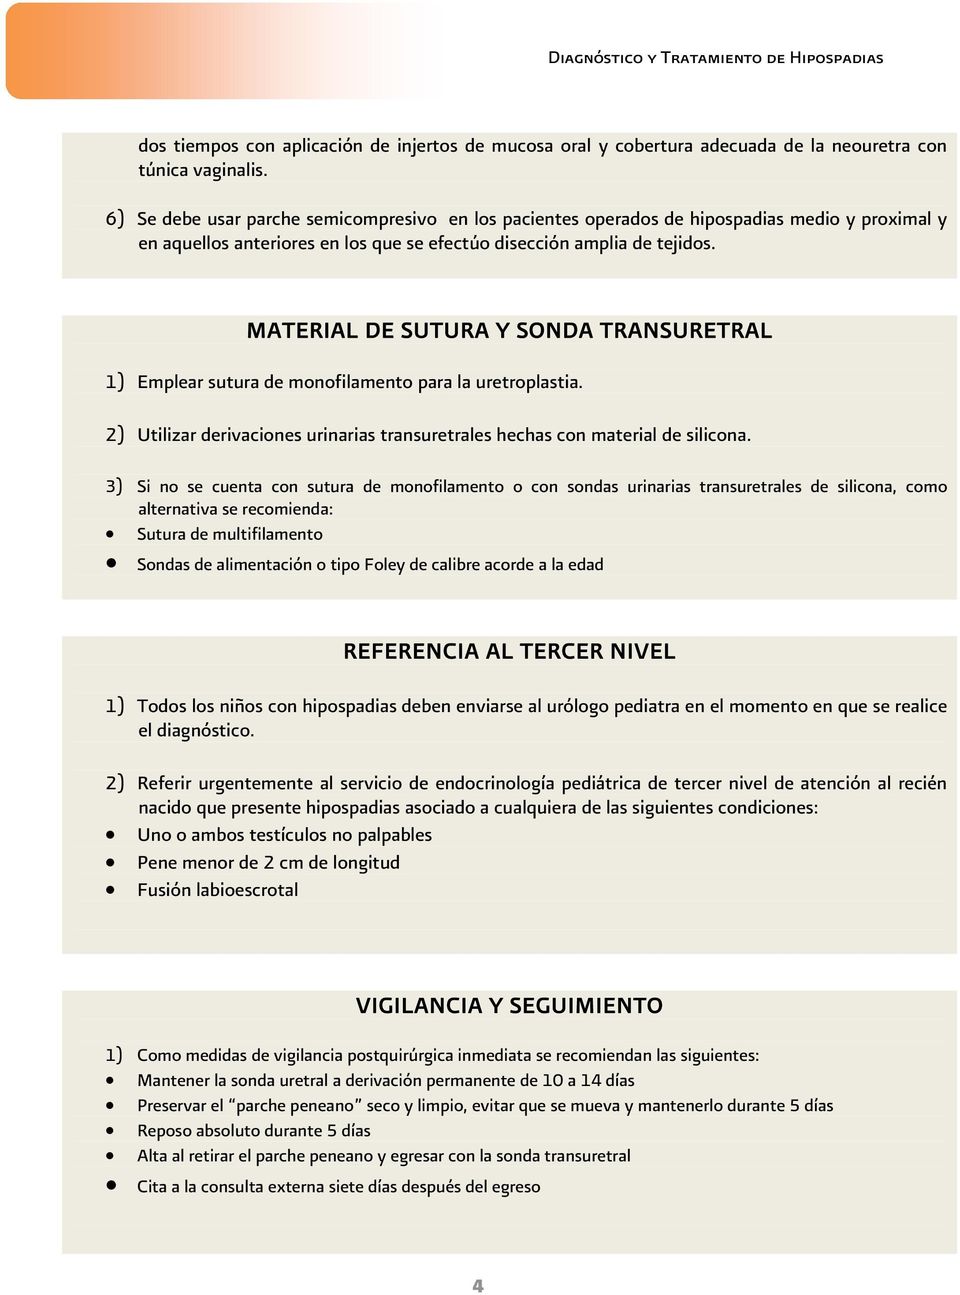 MATERIAL DE SUTURA Y SONDA TRANSURETRAL 1) Emplear sutura de monofilamento para la uretroplastia. 2) Utilizar derivaciones urinarias transuretrales hechas con material de silicona.